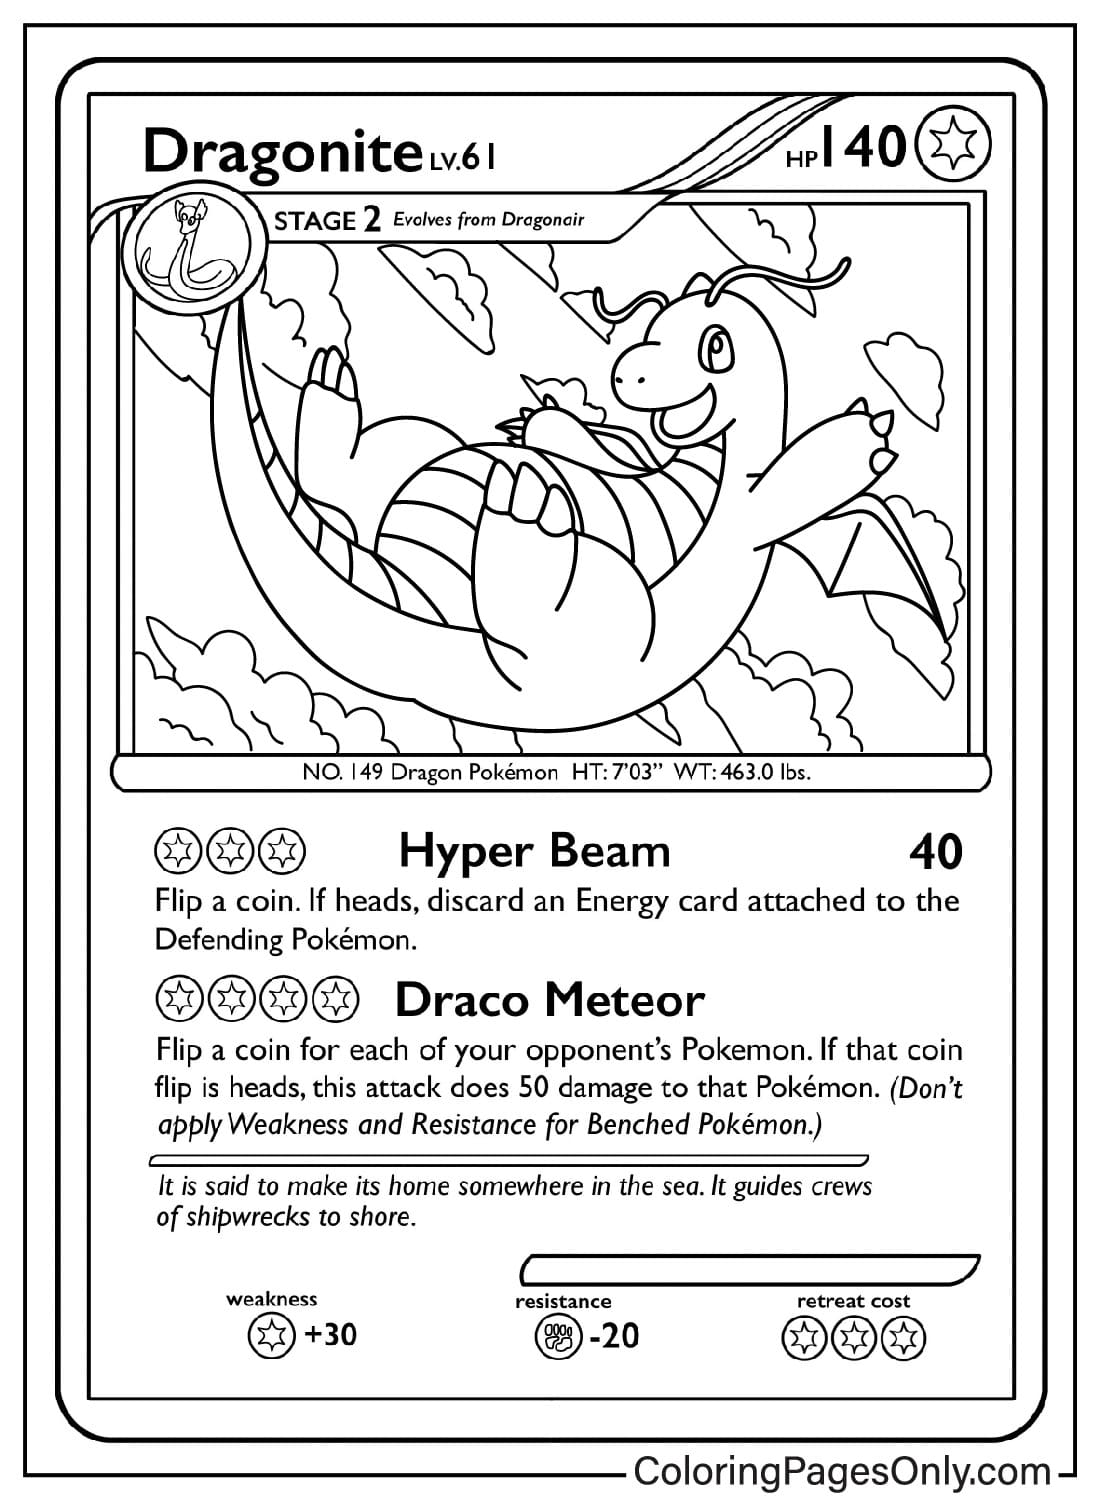 口袋妖怪卡中的 Dragonite 卡着色页